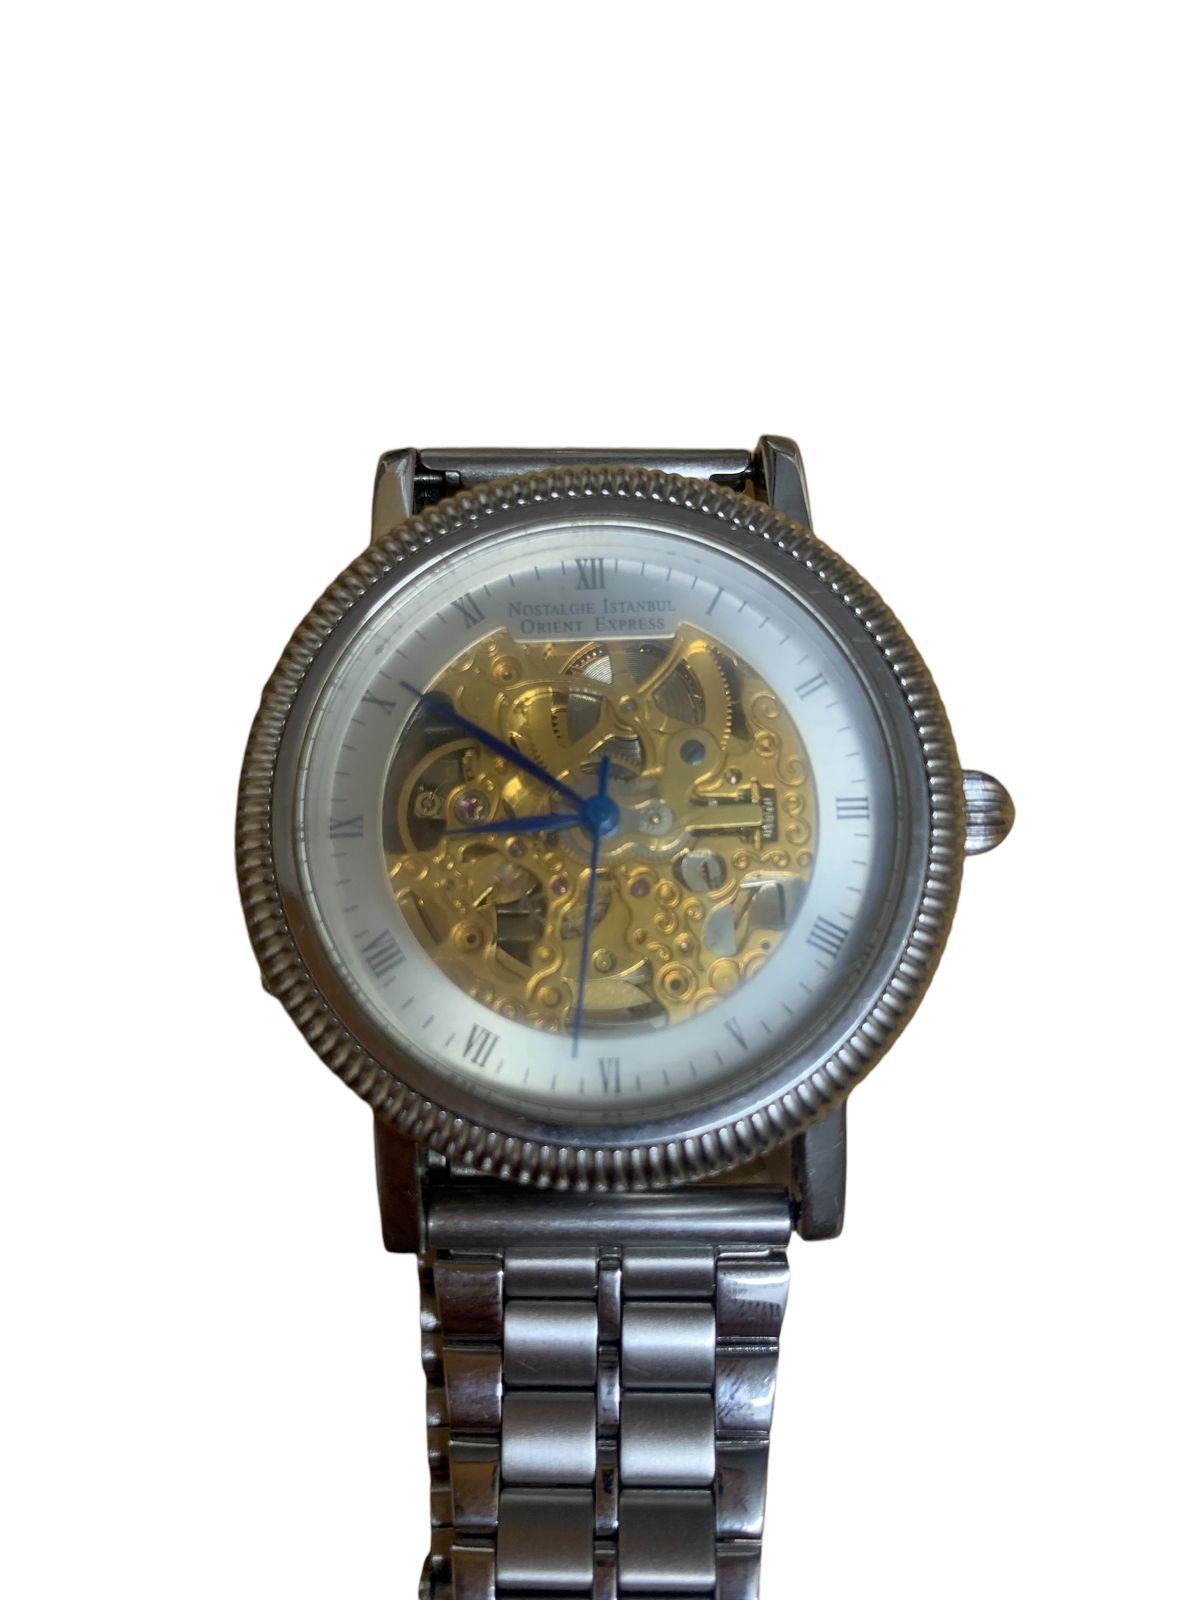 ORIENT EXPRESS NOSTALGIE ISATNBUL 腕時計ケース約38mm